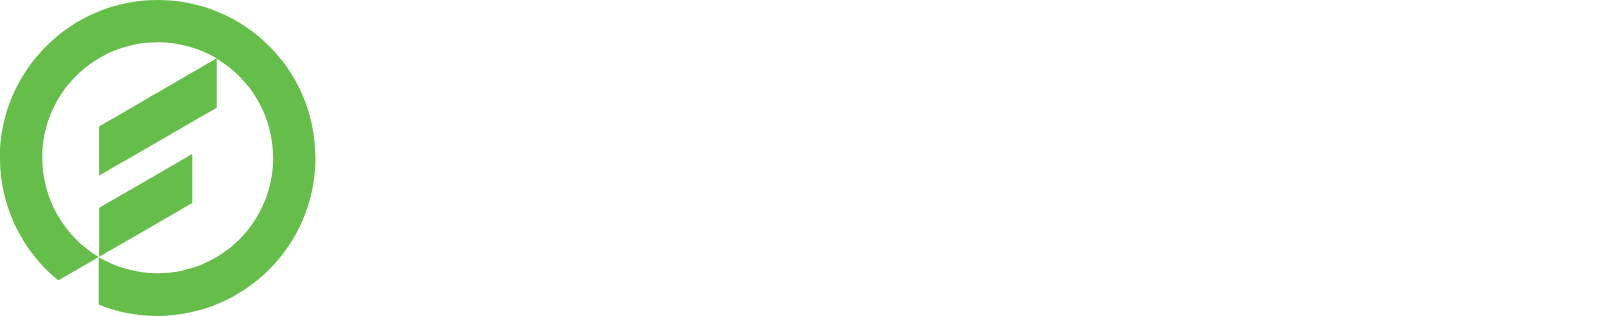 Fortive logo grand pour les fonds sombres (PNG transparent)